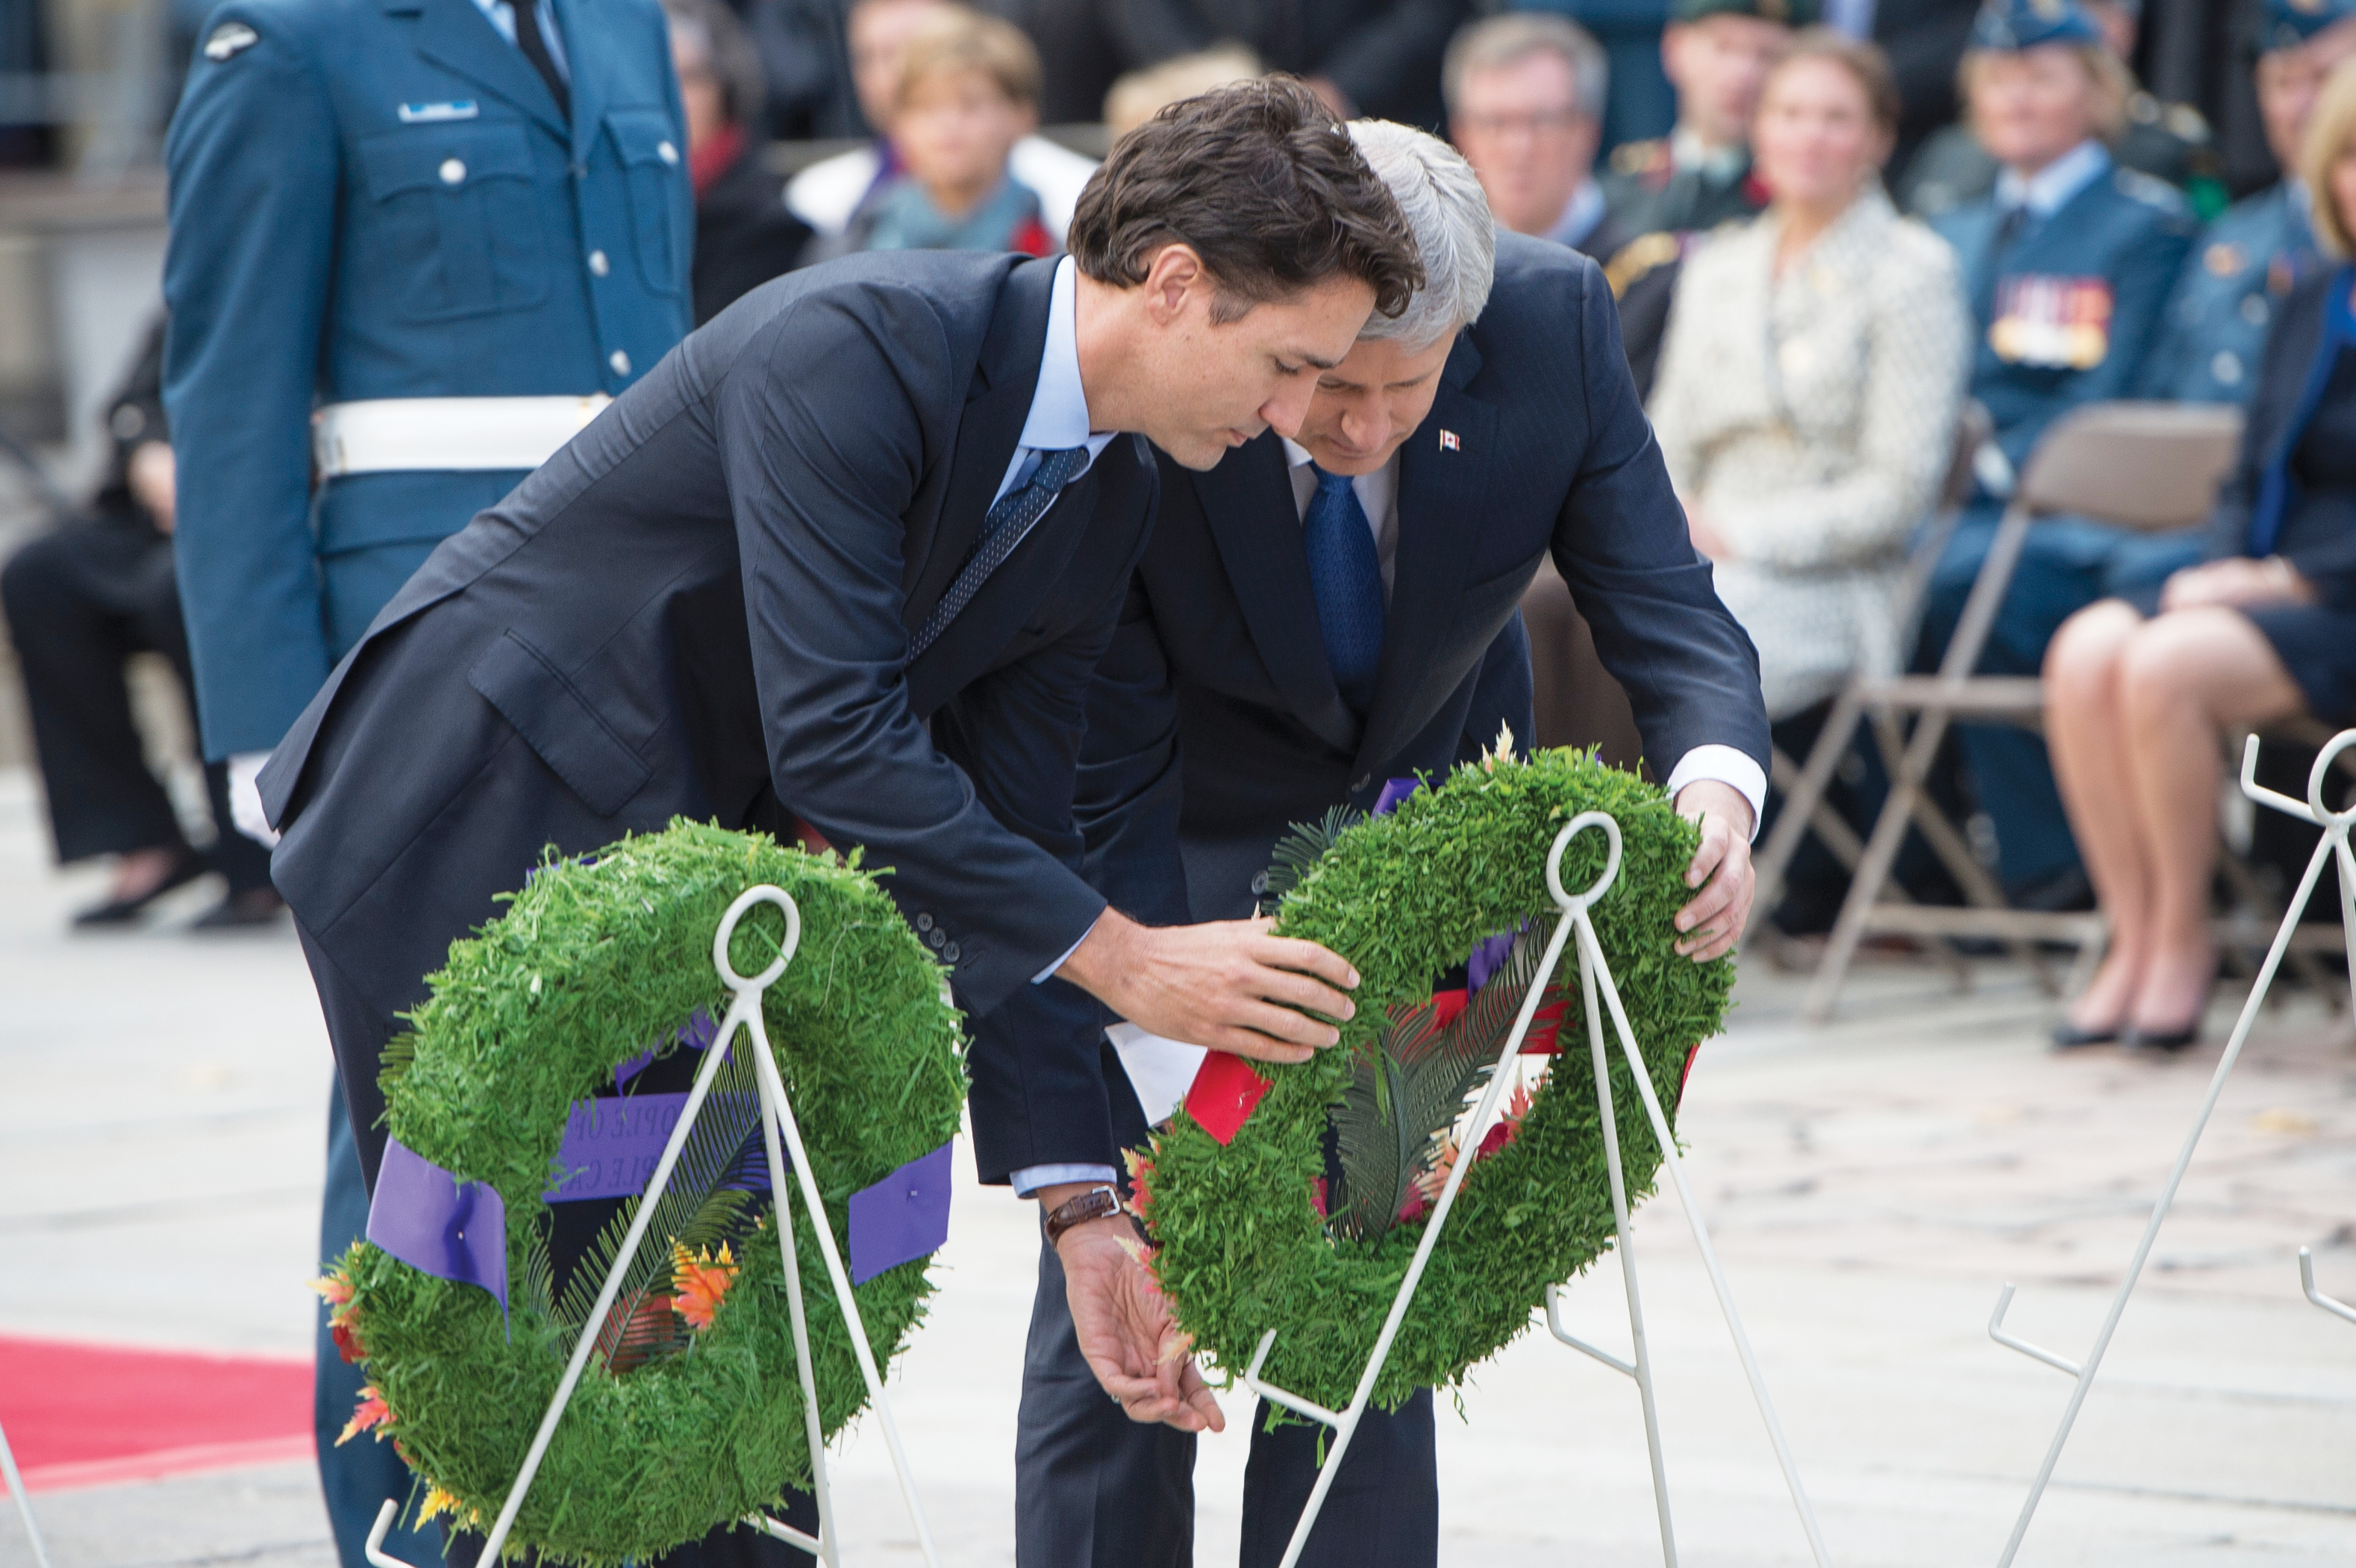 Cérémonie en commémoration d’attentats perpétrés en 2014